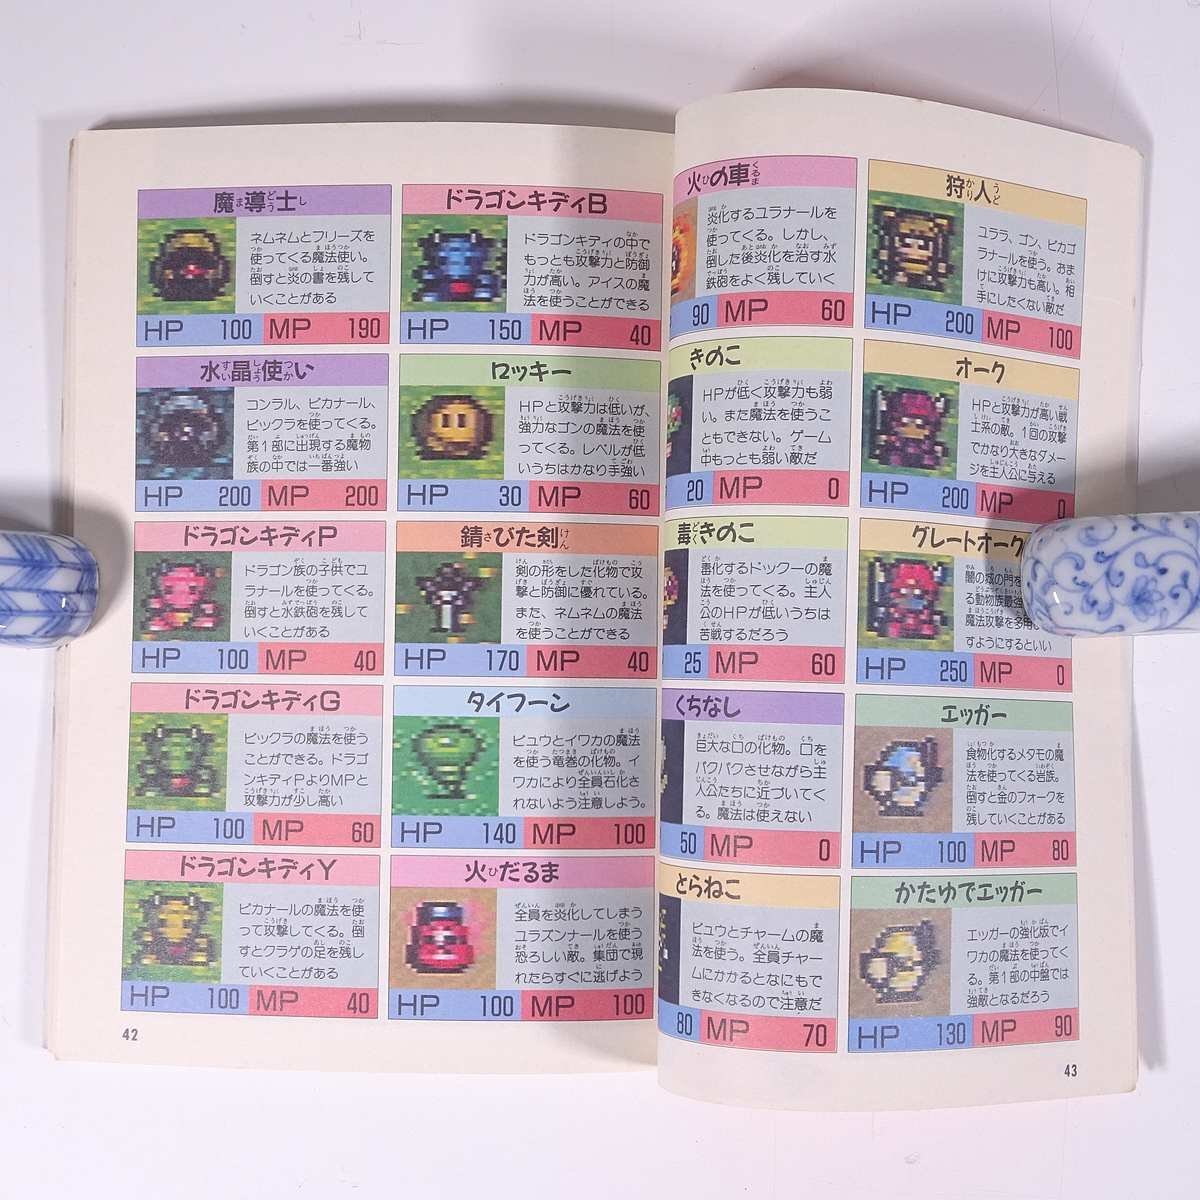 ライトファンタジー 攻略ガイドブック 雑誌付録(ファミリーコンピュータMagazine) 1992 小冊子 ゲーム 攻略本_画像9